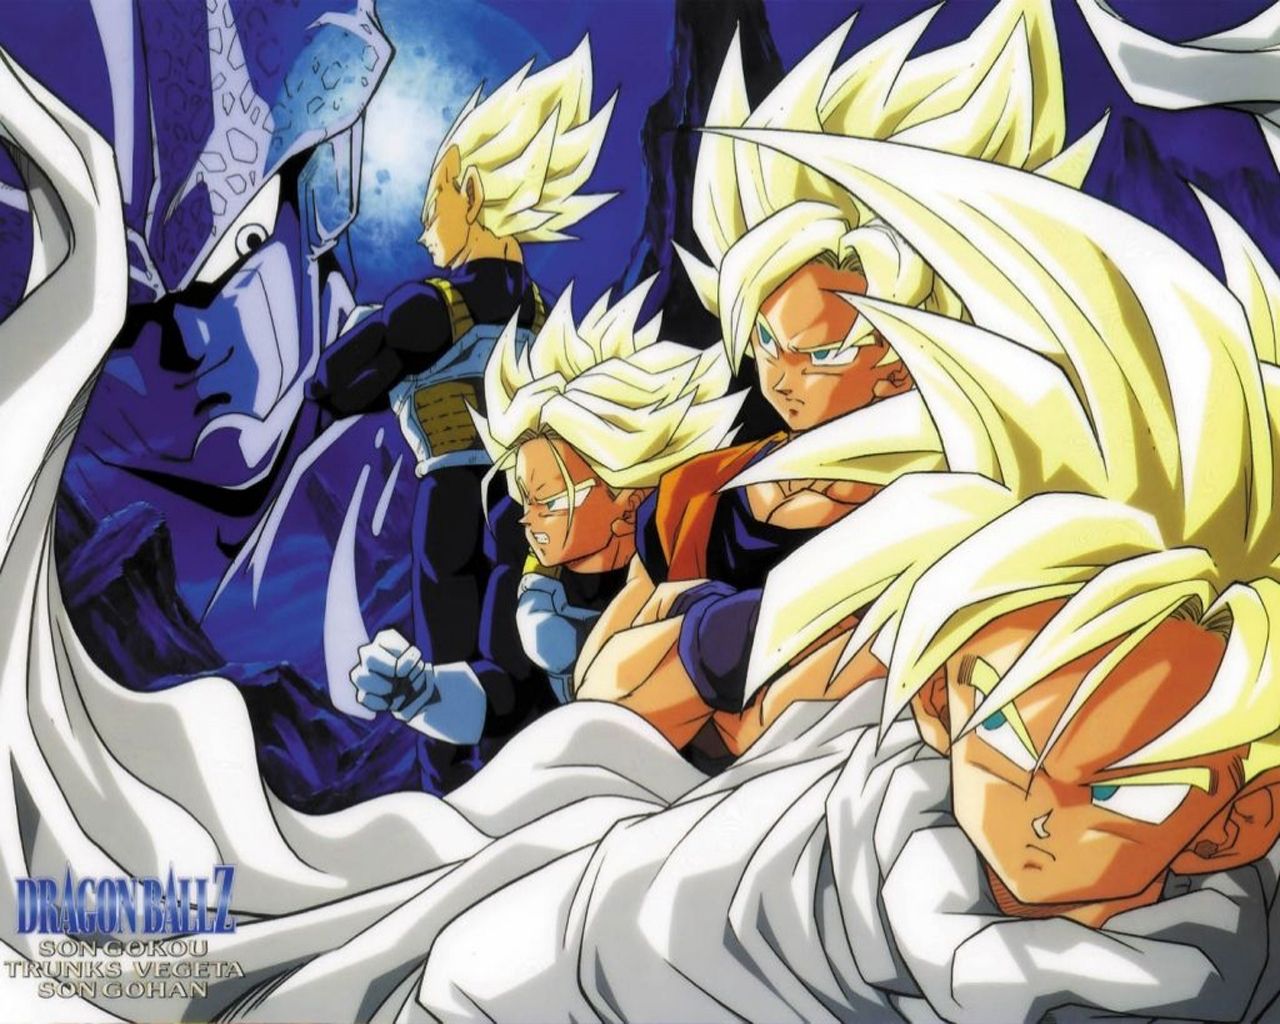 Dragon Ball Z Wallpapers Goku And Vegeta